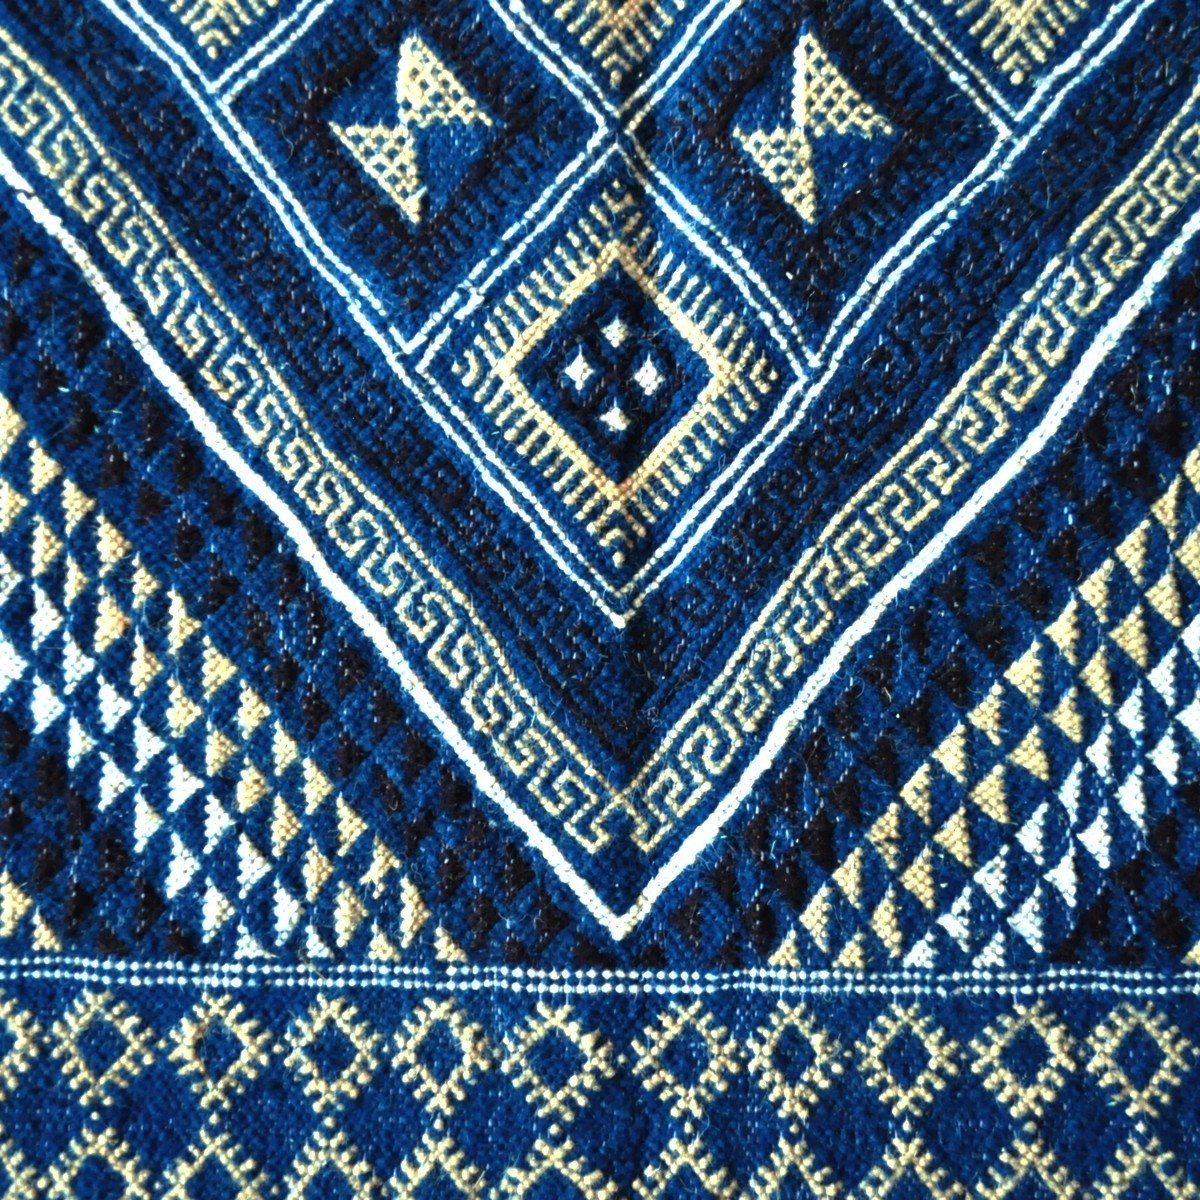 Berber carpet Large Rug Margoum Yamina 165x240 Blue (Handmade, Wool, Tunisia) Tunisian margoum rug from the city of Kairouan. Re